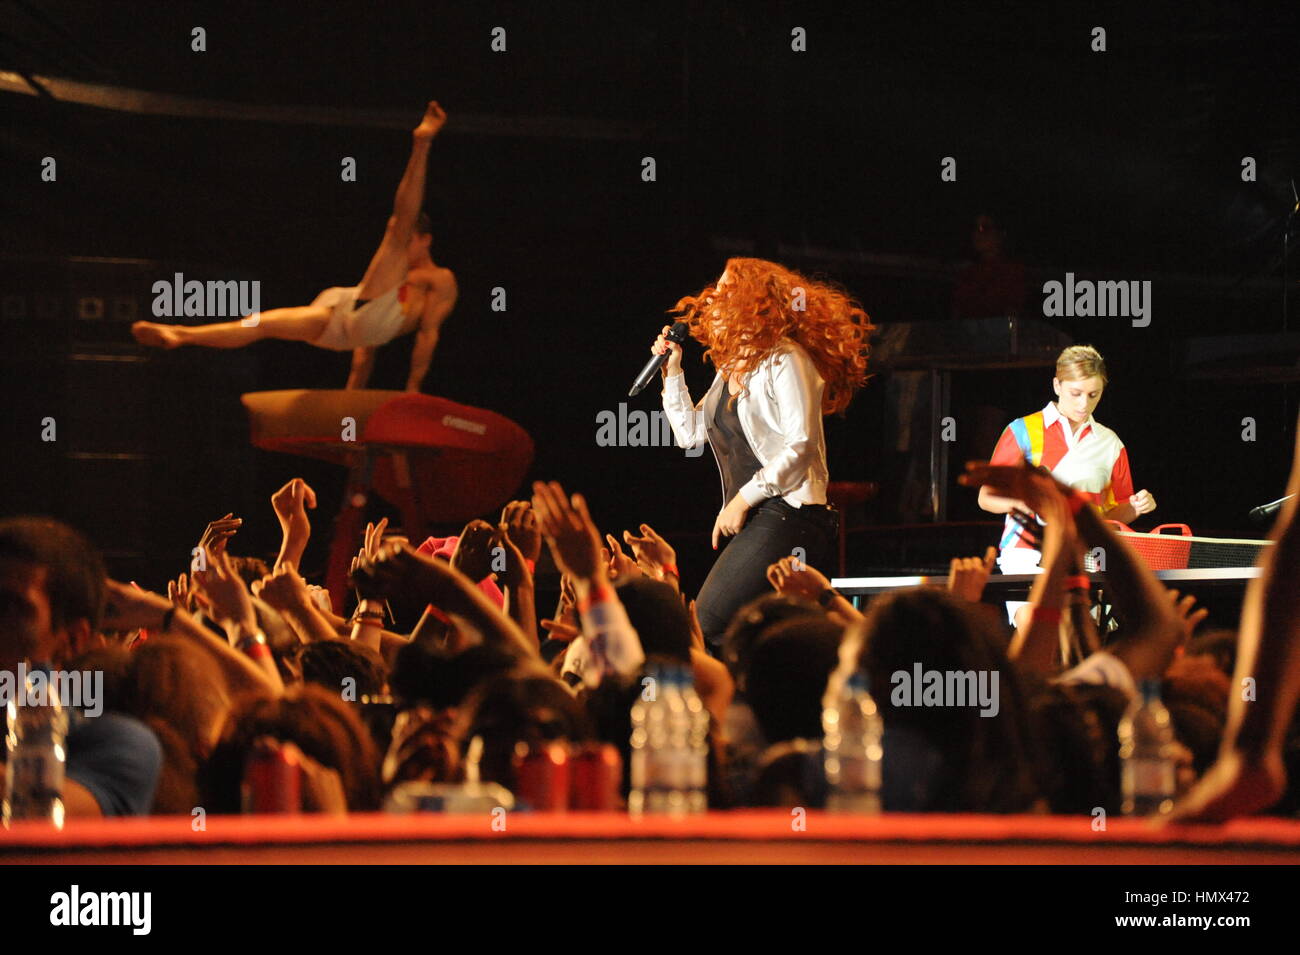 Katy B Eseguire durante le riprese di movimento per lui battere Olimpiadi di Londra la Coca Cola Annuncio Foto Stock